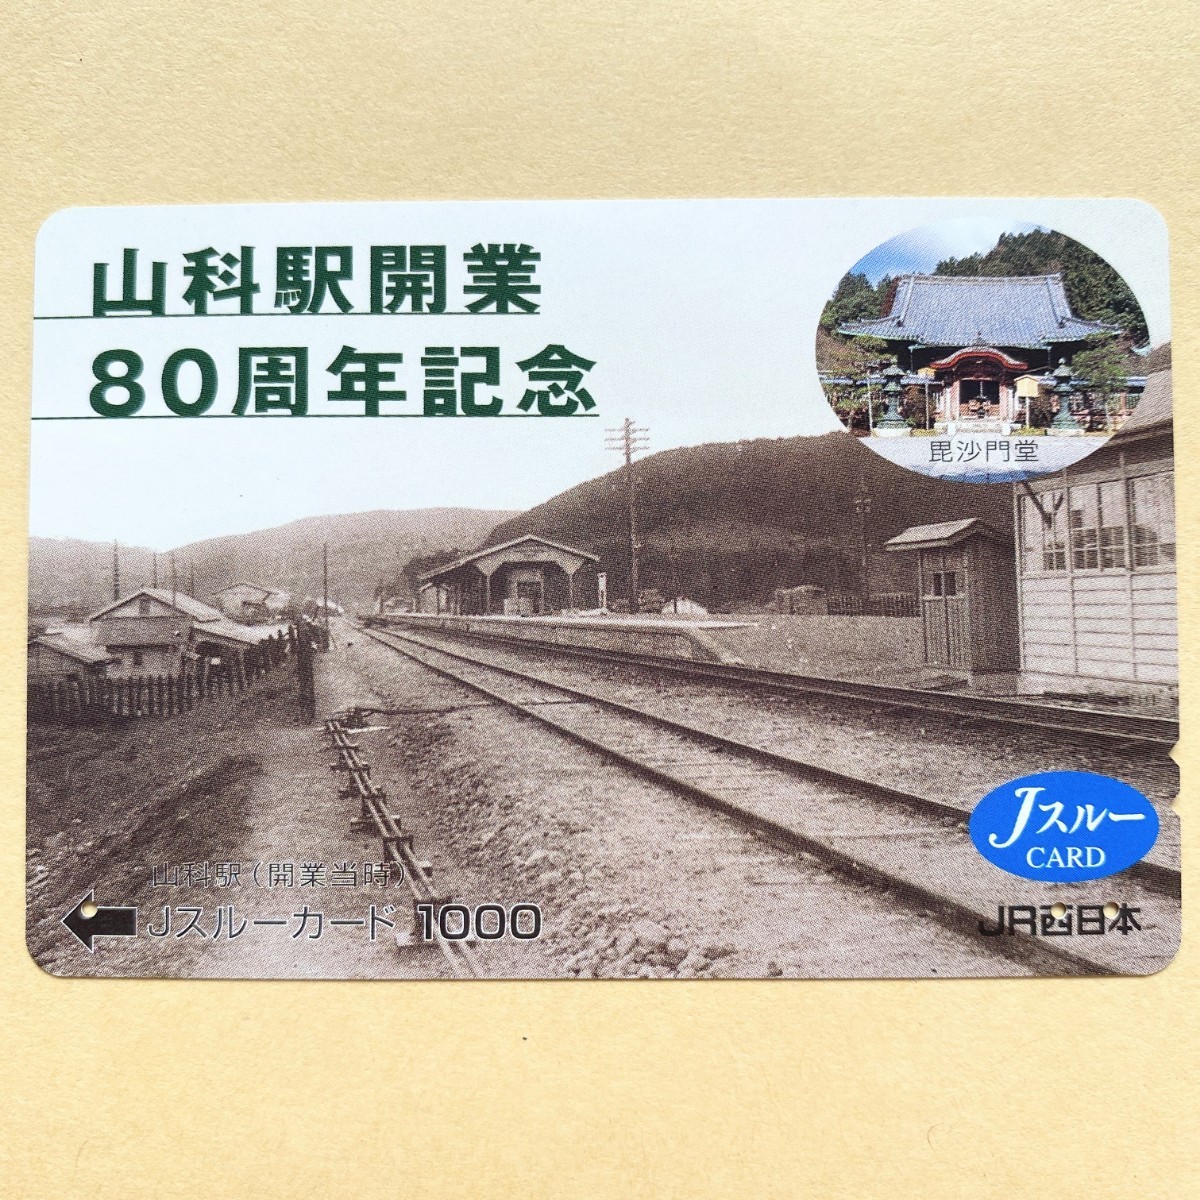 [ использованный ] Js Roo карта JR запад Япония Ямасина станция открытие 80 anniversary commemoration Ямасина станция ( открытие в это время )....